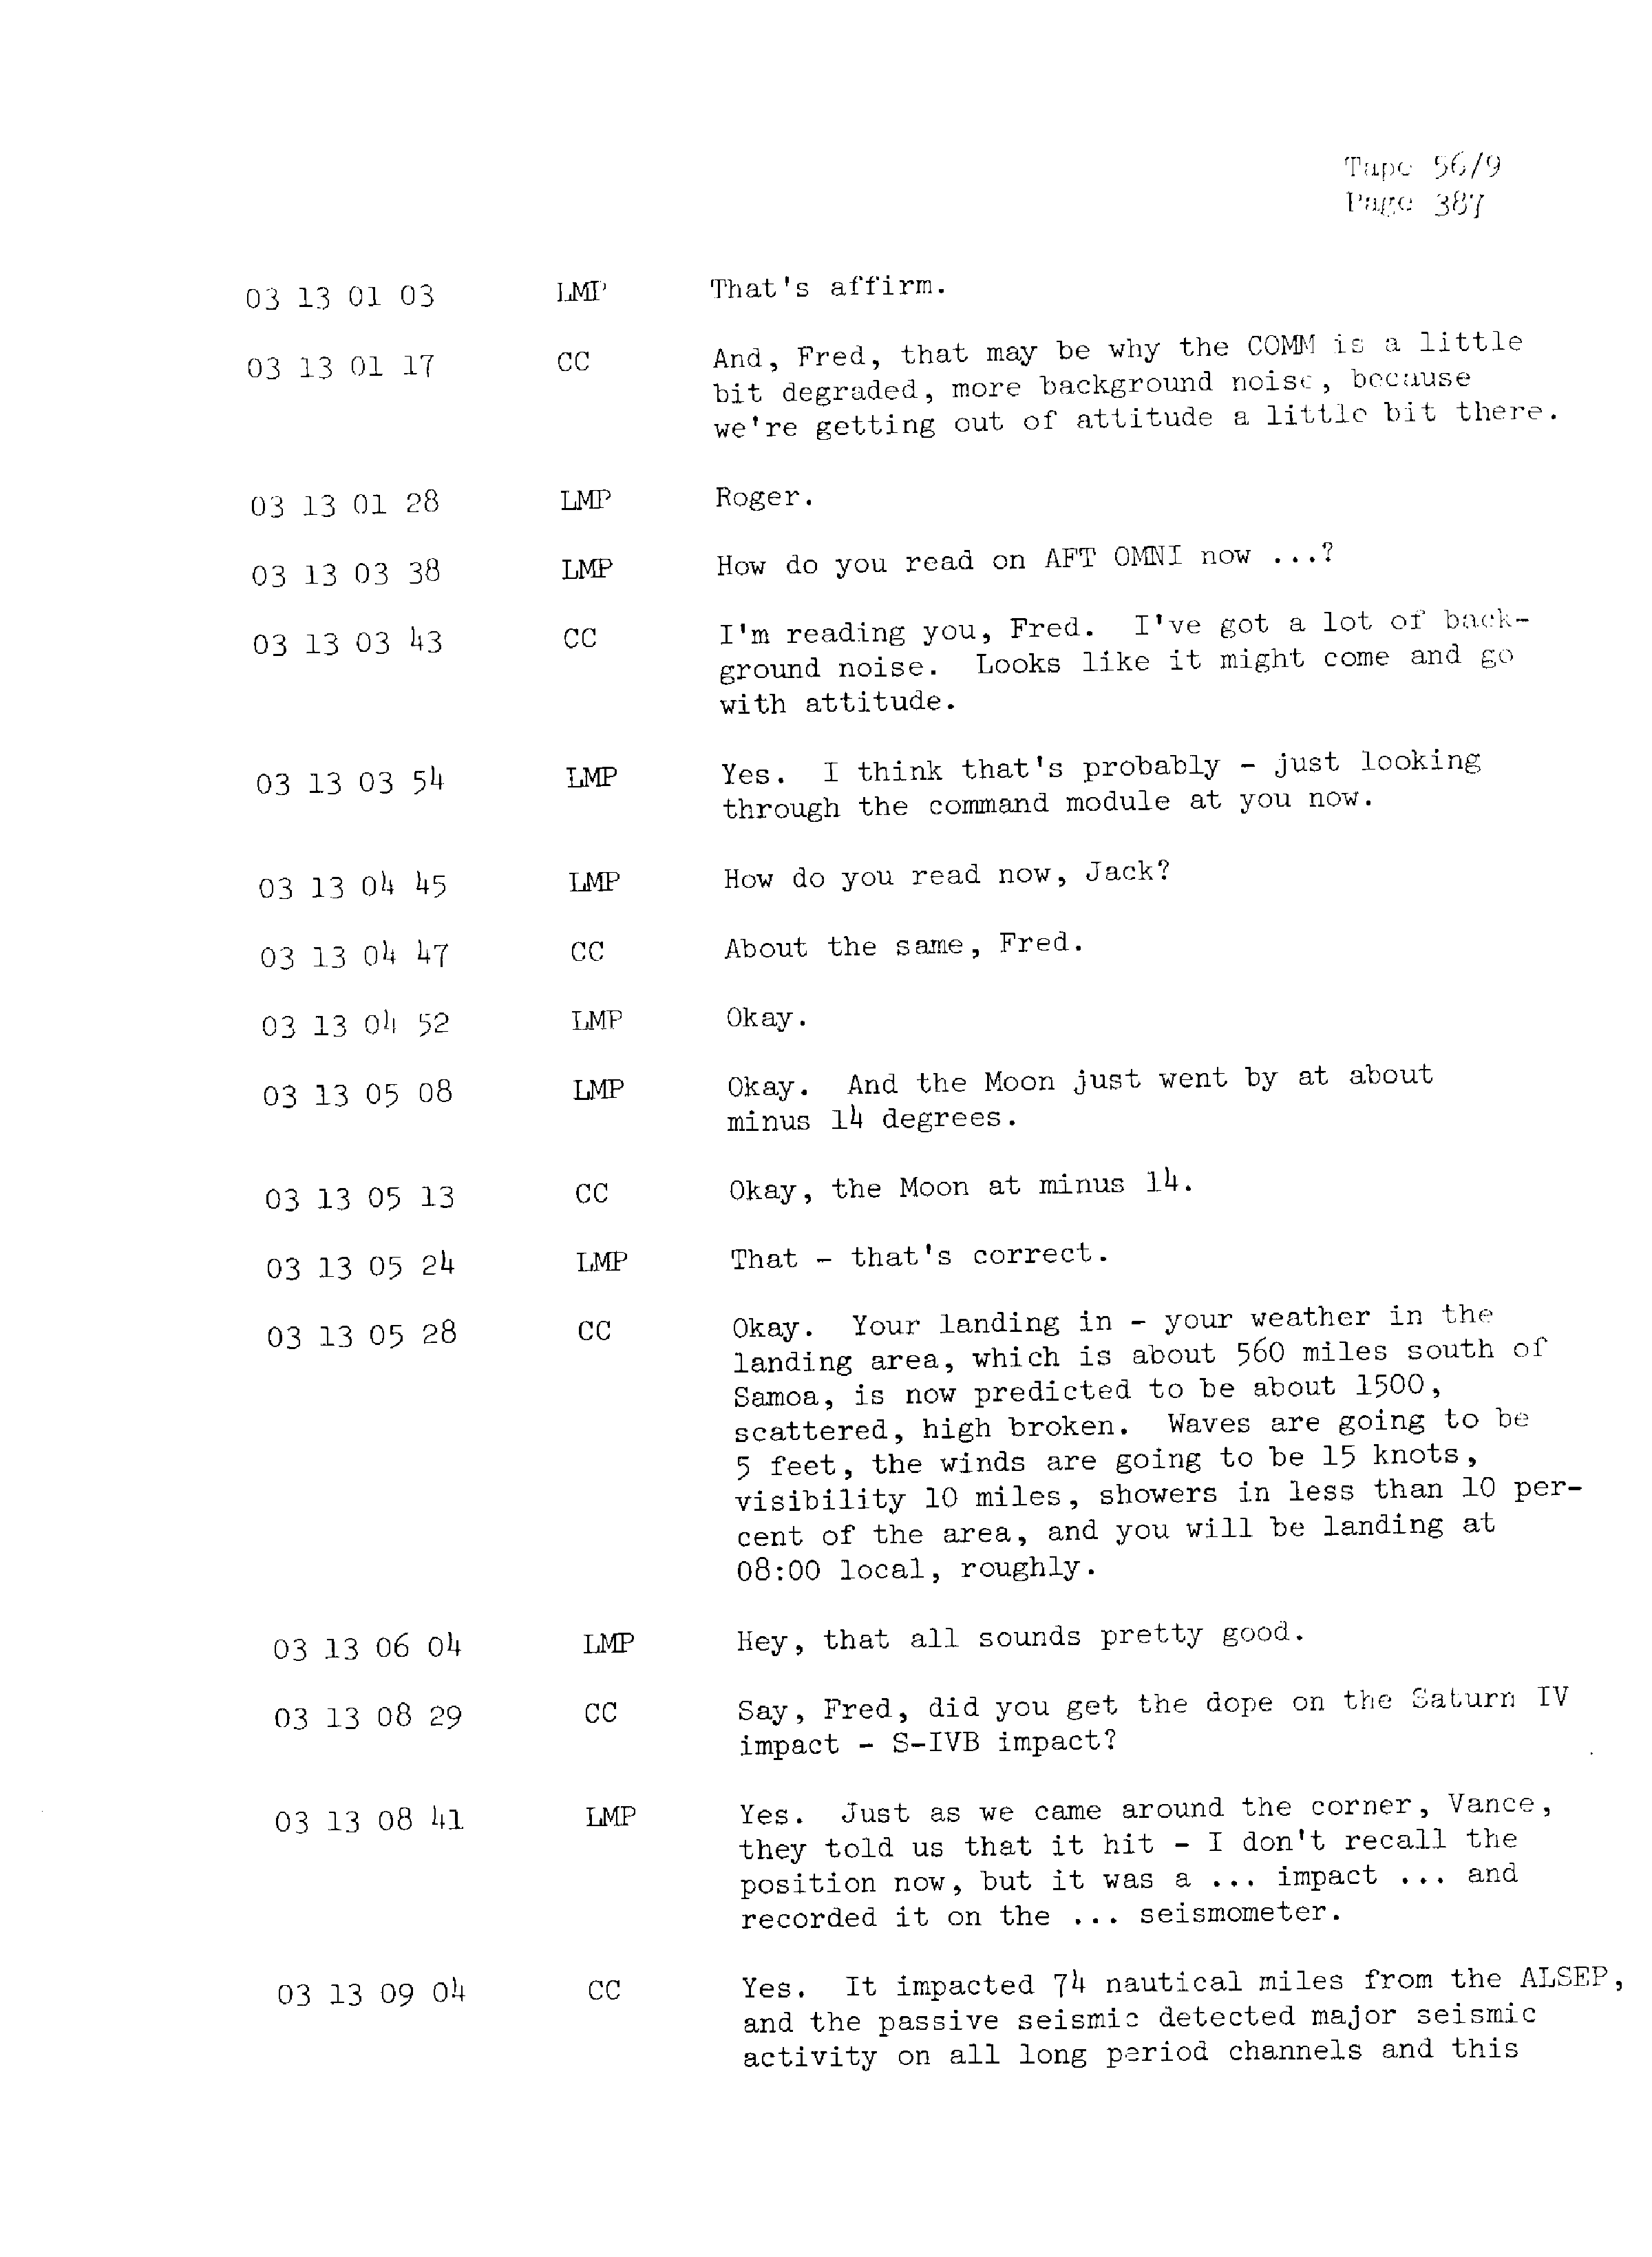 Page 394 of Apollo 13’s original transcript